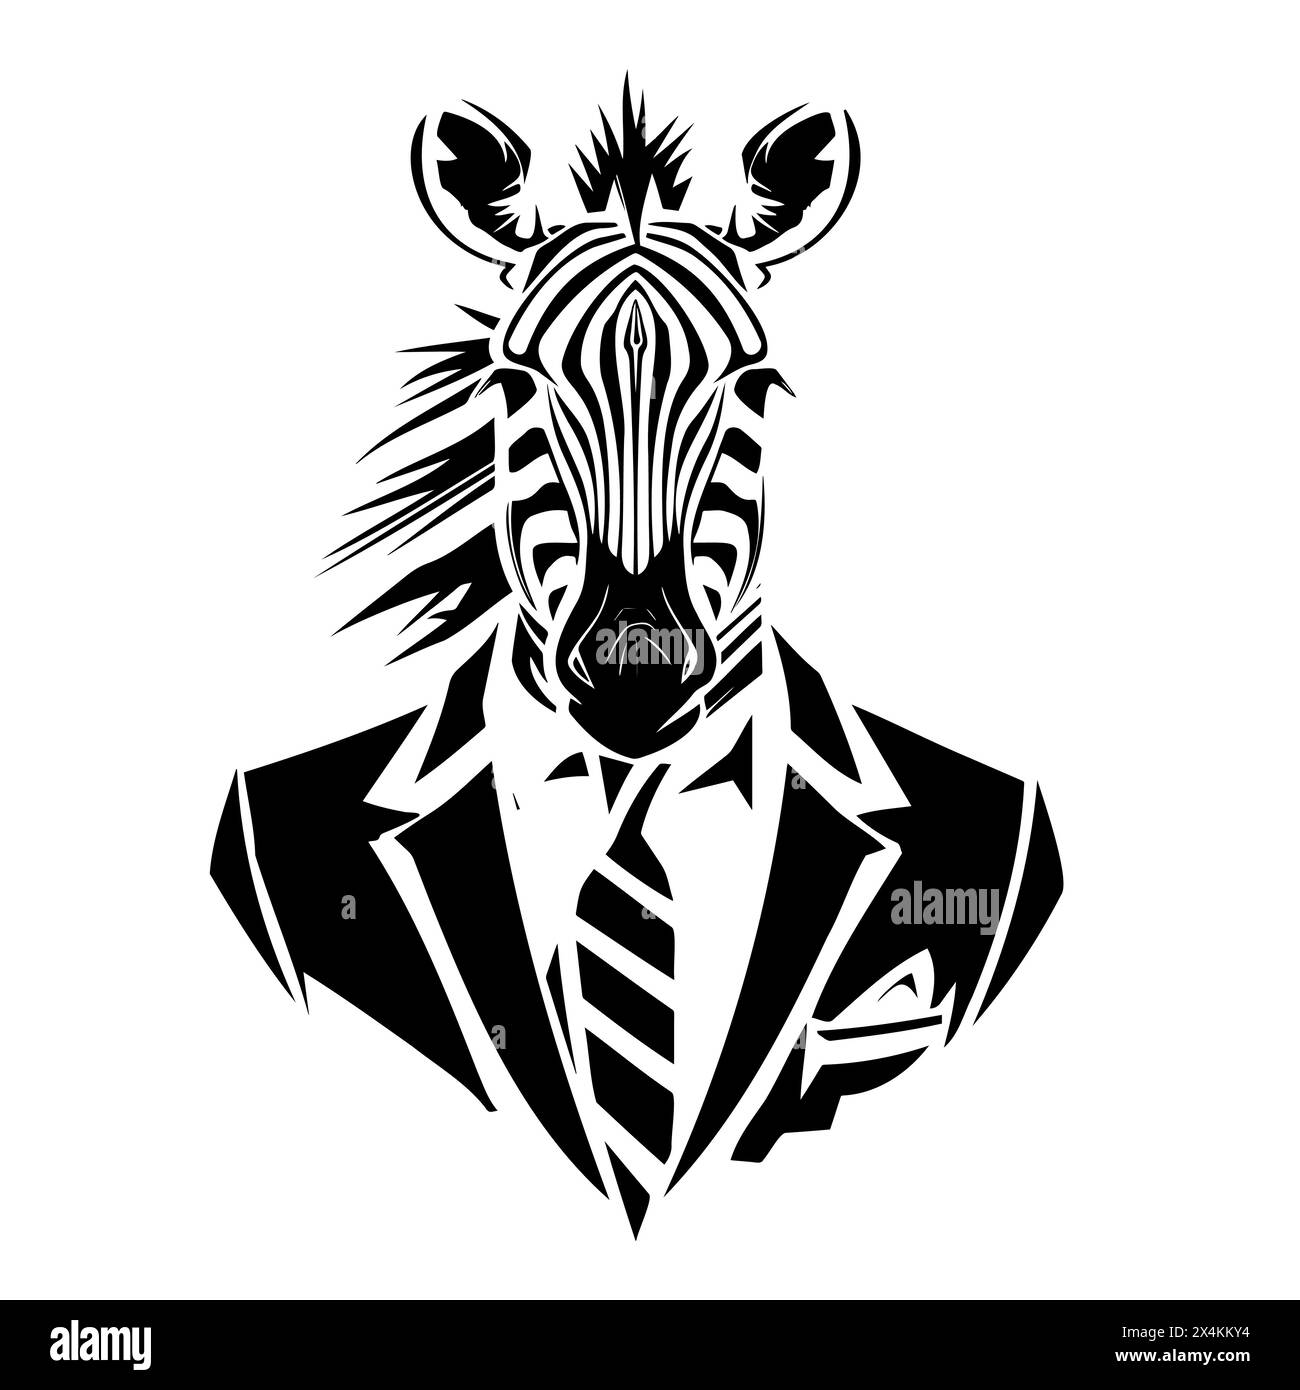 Ein Zebra in Anzug und Krawatte mit Strichgrafik und Schablonendetails Stock Vektor